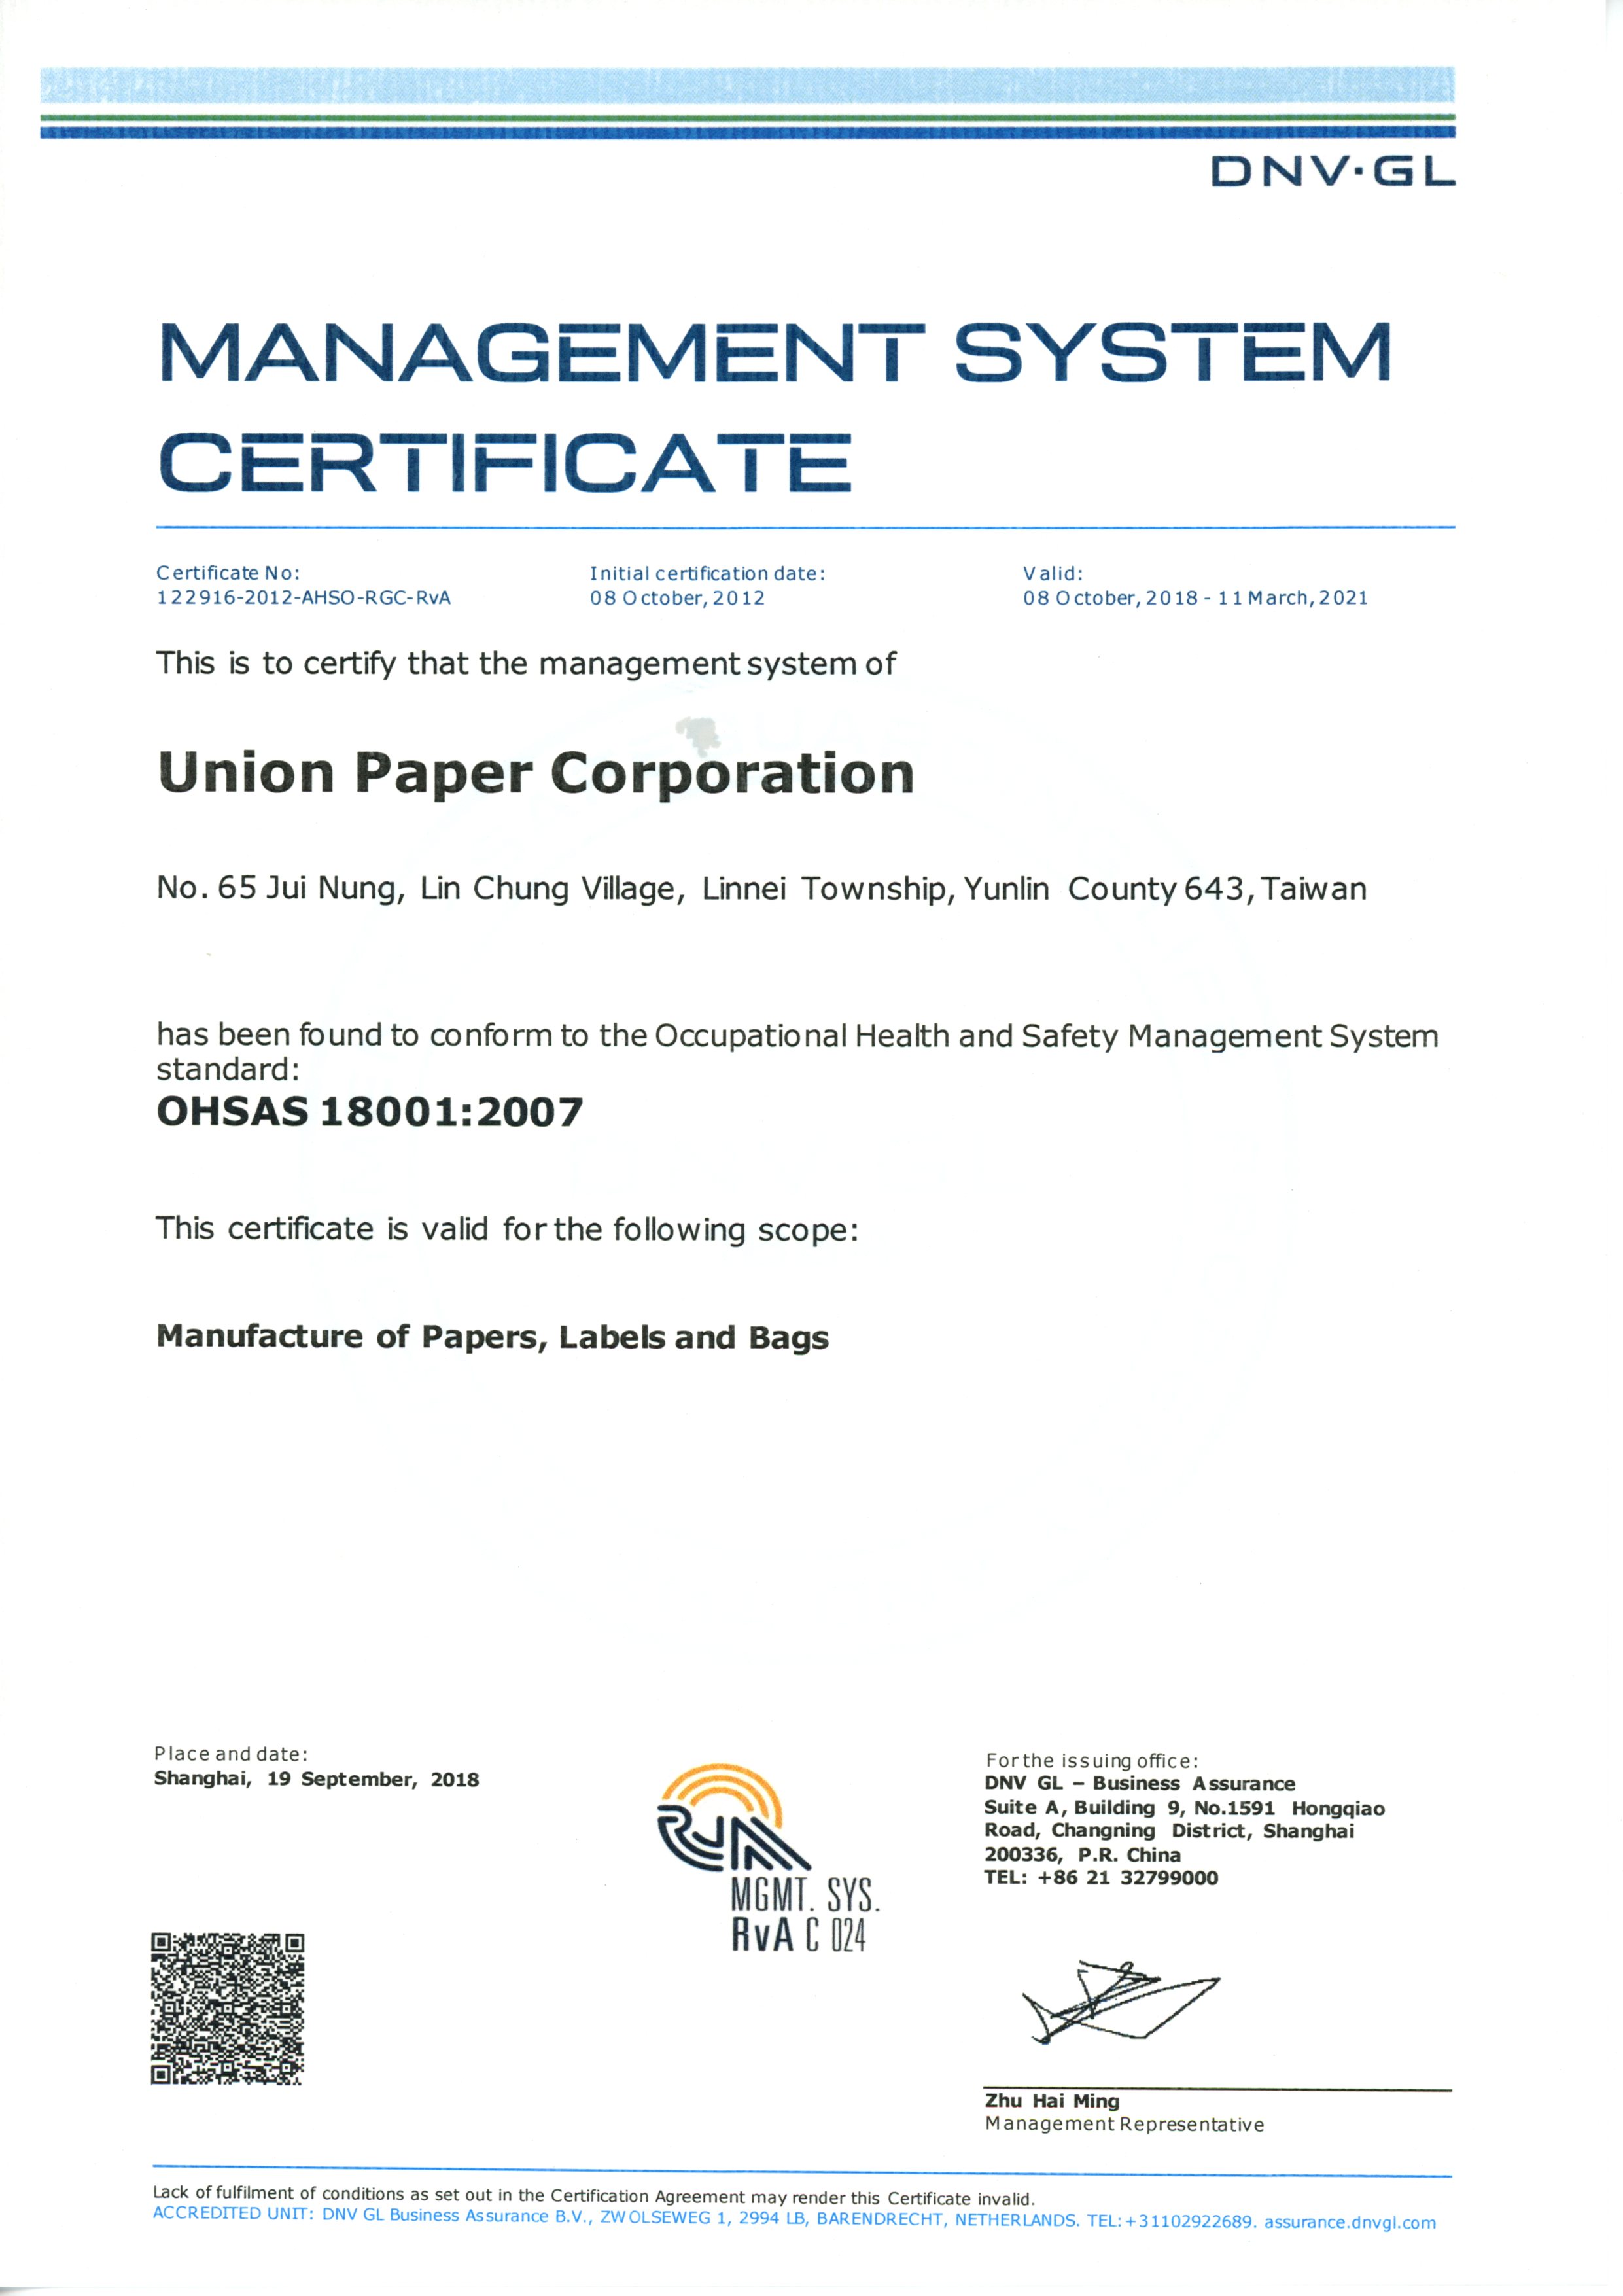 OHSAS 18001- Union Ppaper Corporation., Ltd